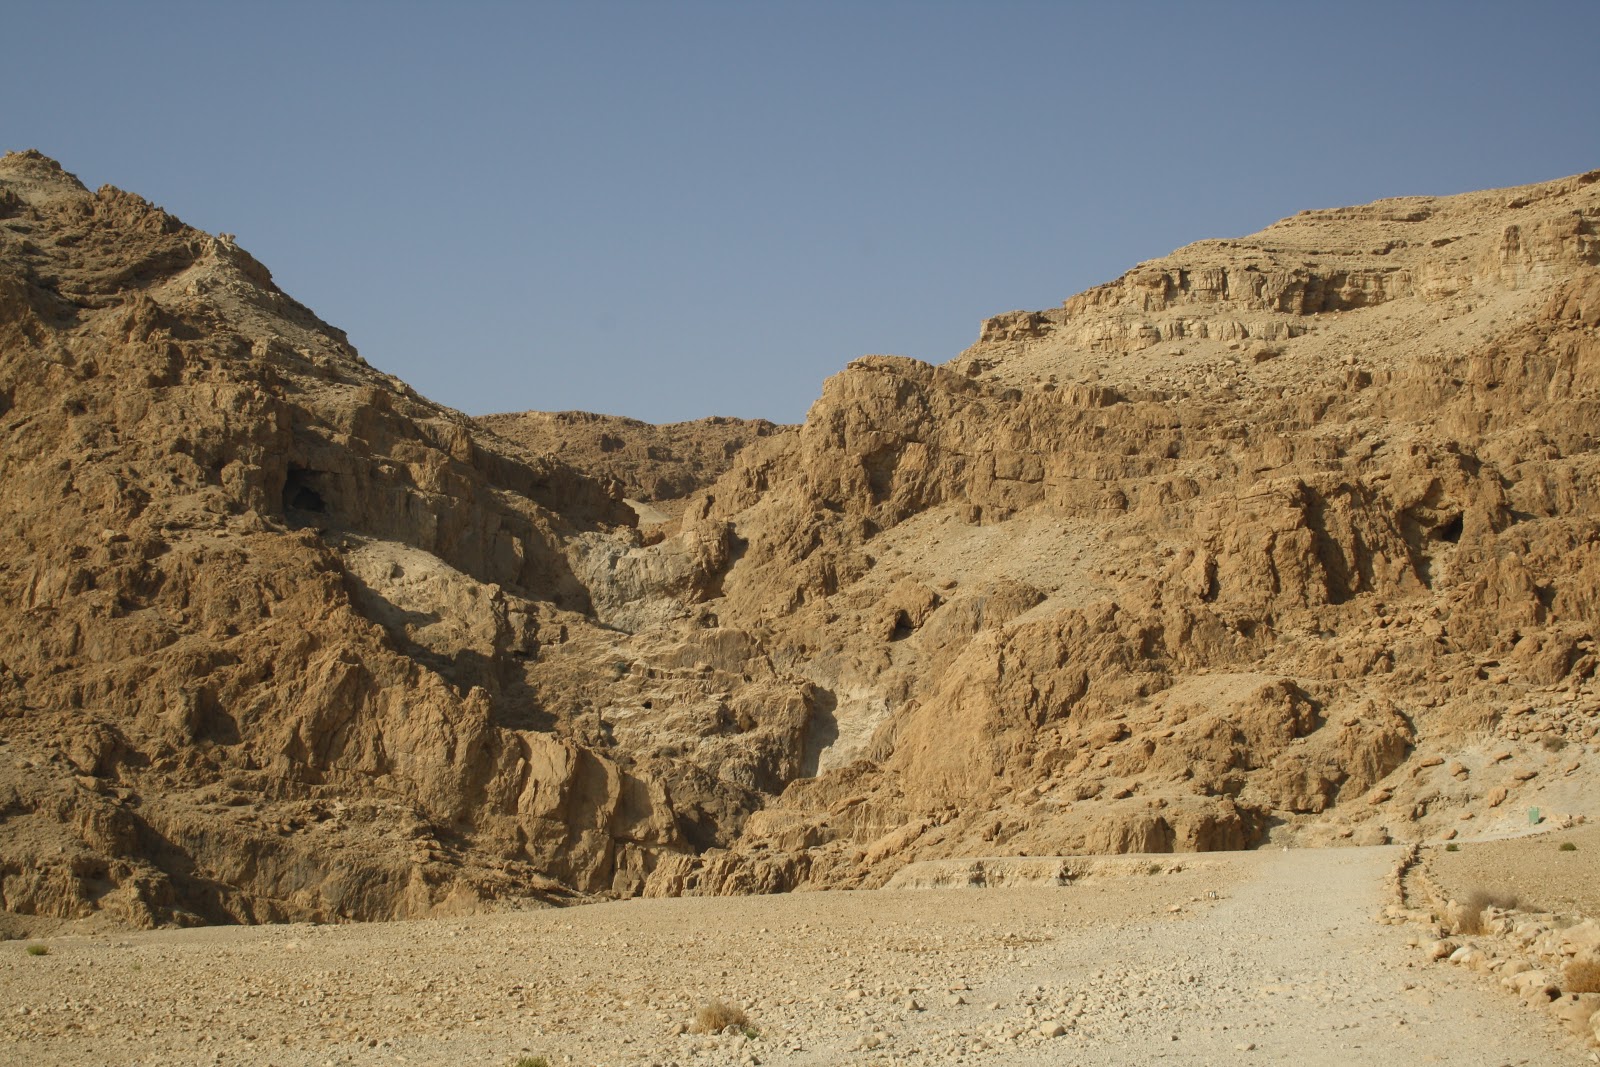 Jennifer's Trip to the Middle East: Nov 14 - Masada, Ein Gedi, Qumran Caves